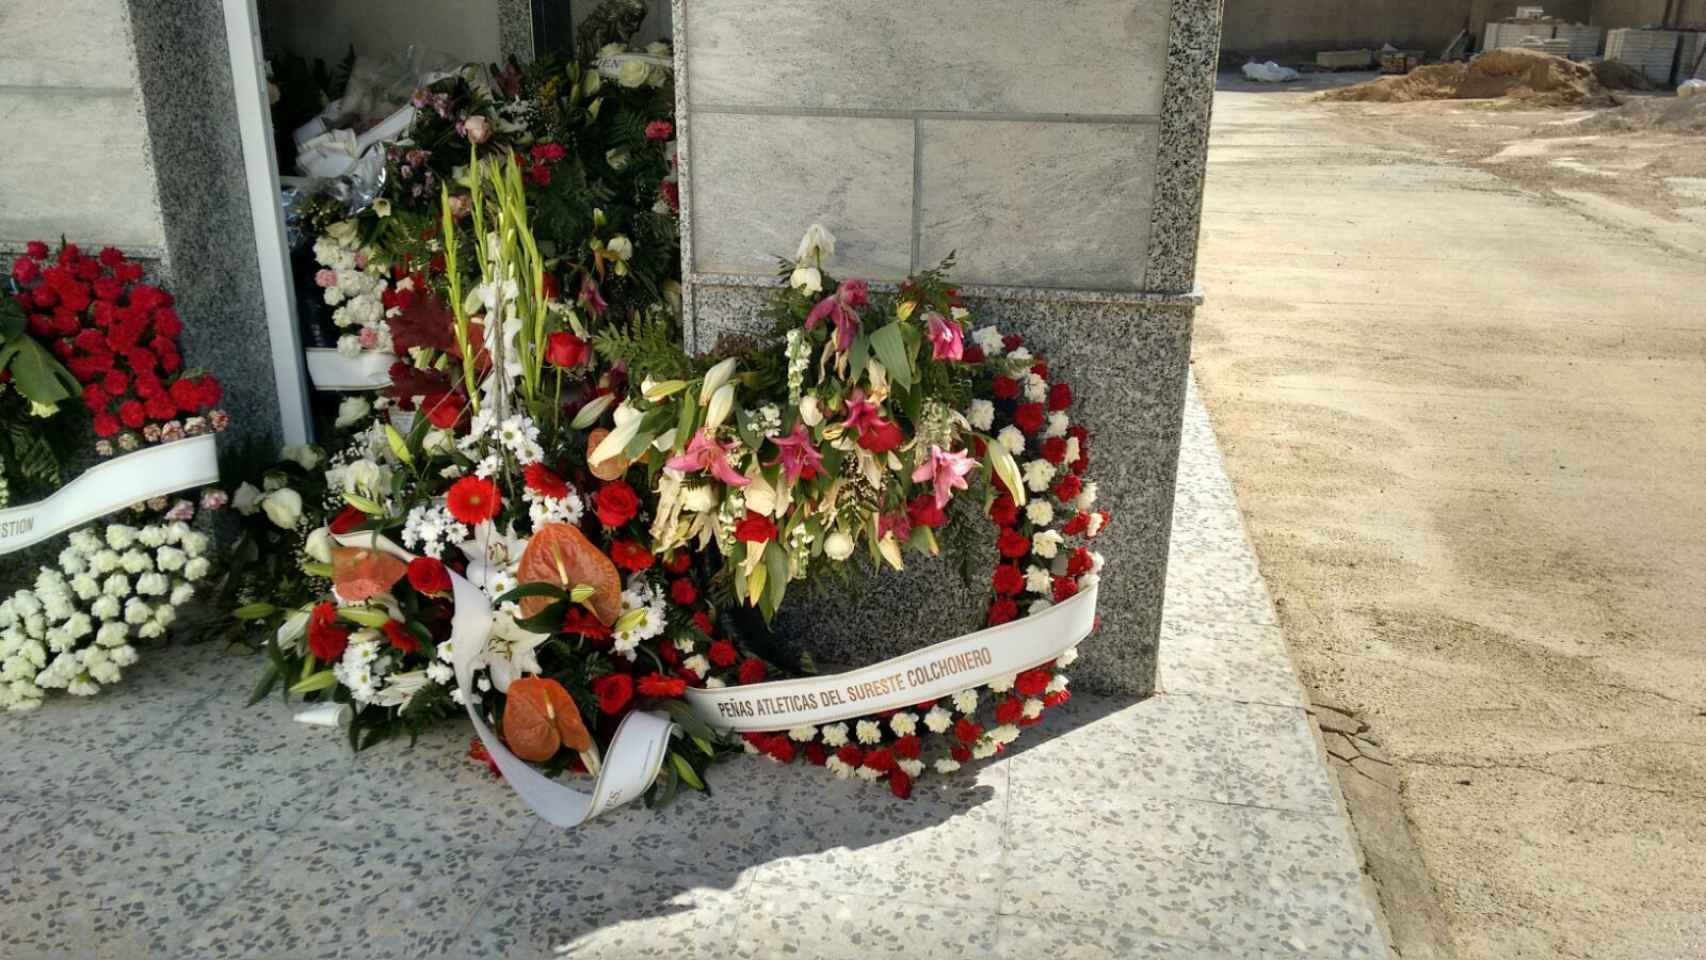 Familiares, amigos y simpatizantes colchoneros han colocado coronas de flores en el nicho de uno de los fallecidos.